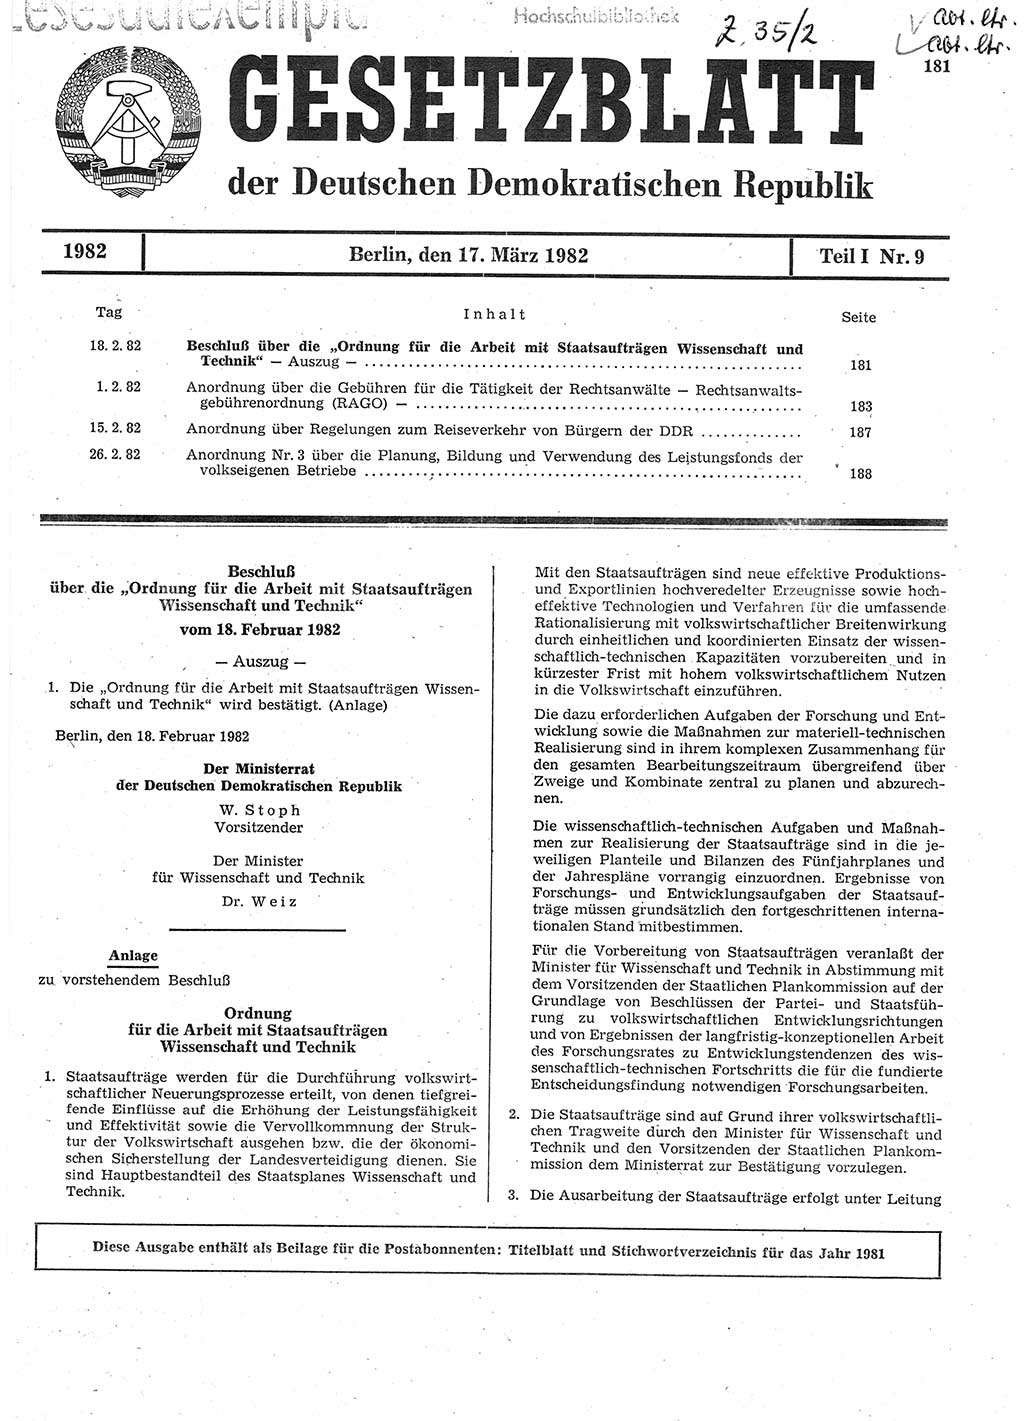 Gesetzblatt (GBl.) der Deutschen Demokratischen Republik (DDR) Teil Ⅰ 1982, Seite 181 (GBl. DDR Ⅰ 1982, S. 181)